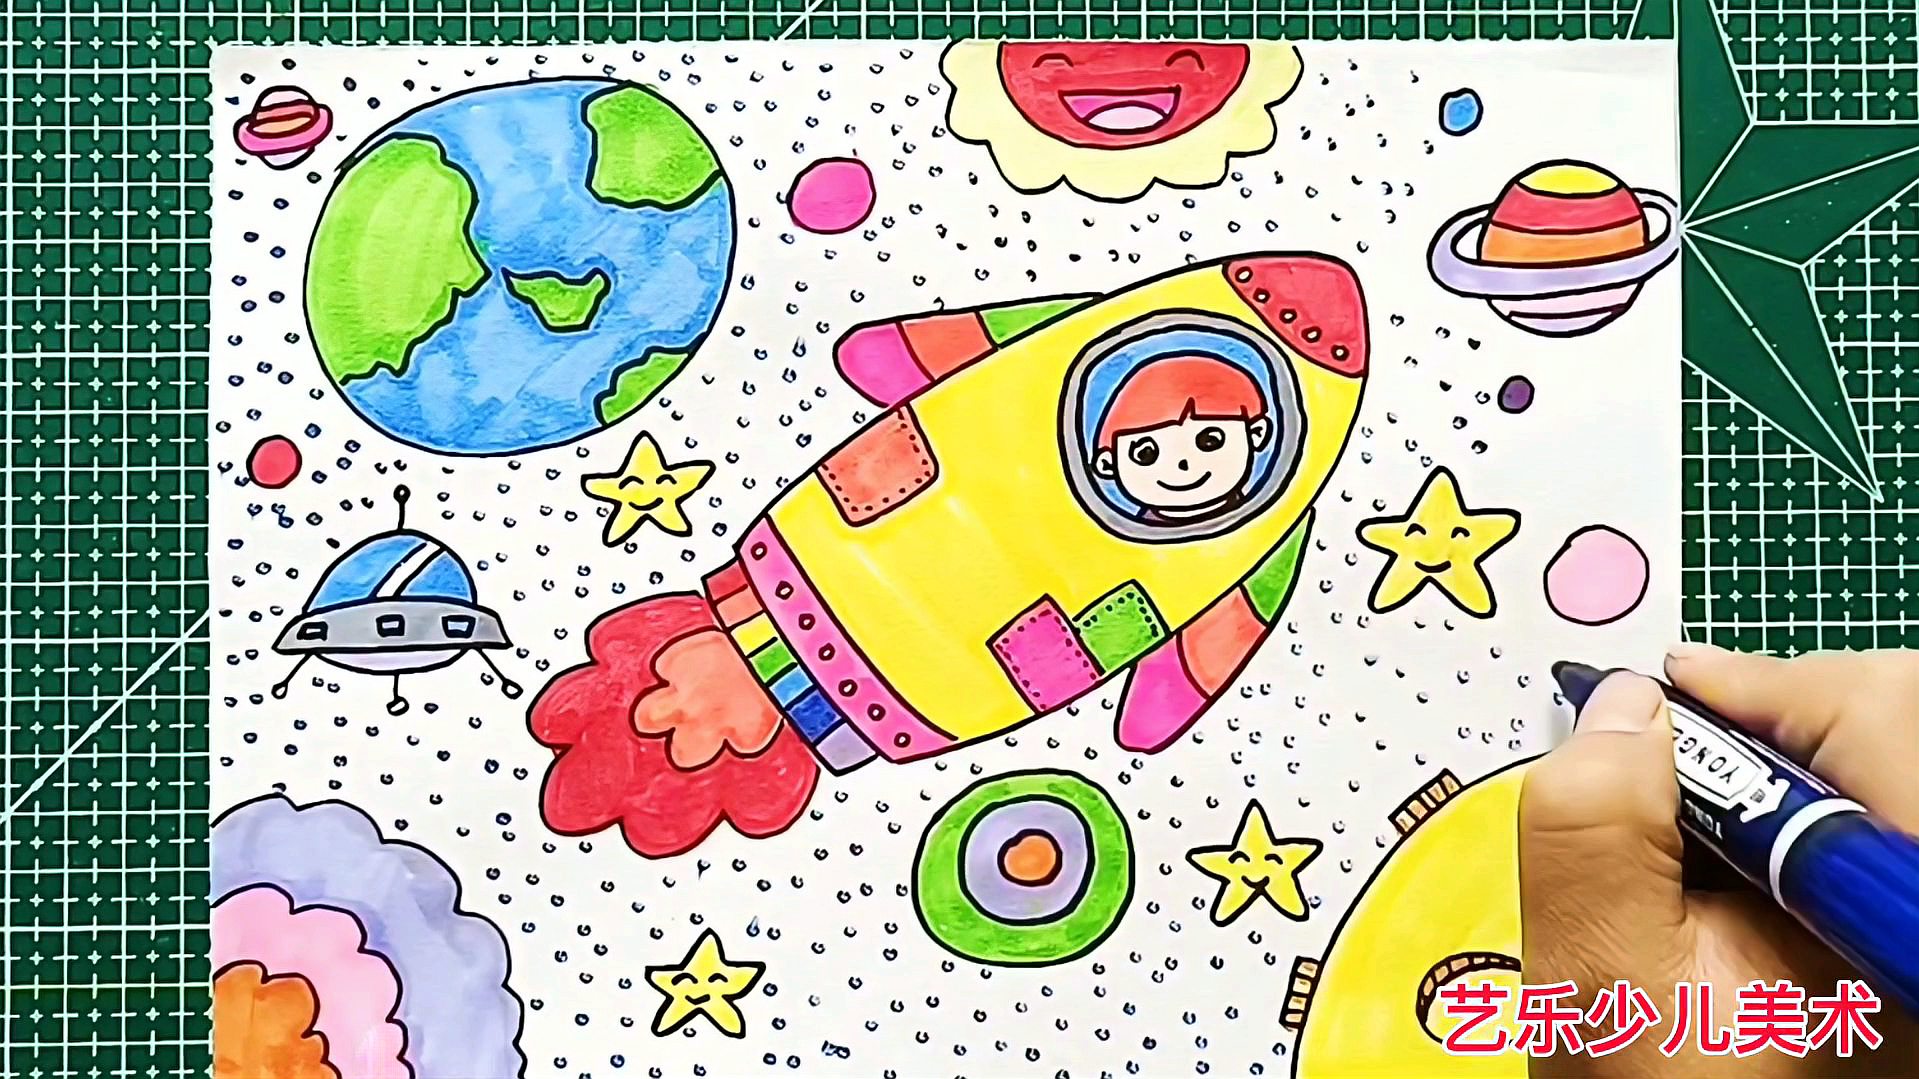 04:59  来源:好看视频-太空飞船简笔画儿童画,幼儿简单绘画,小朋友